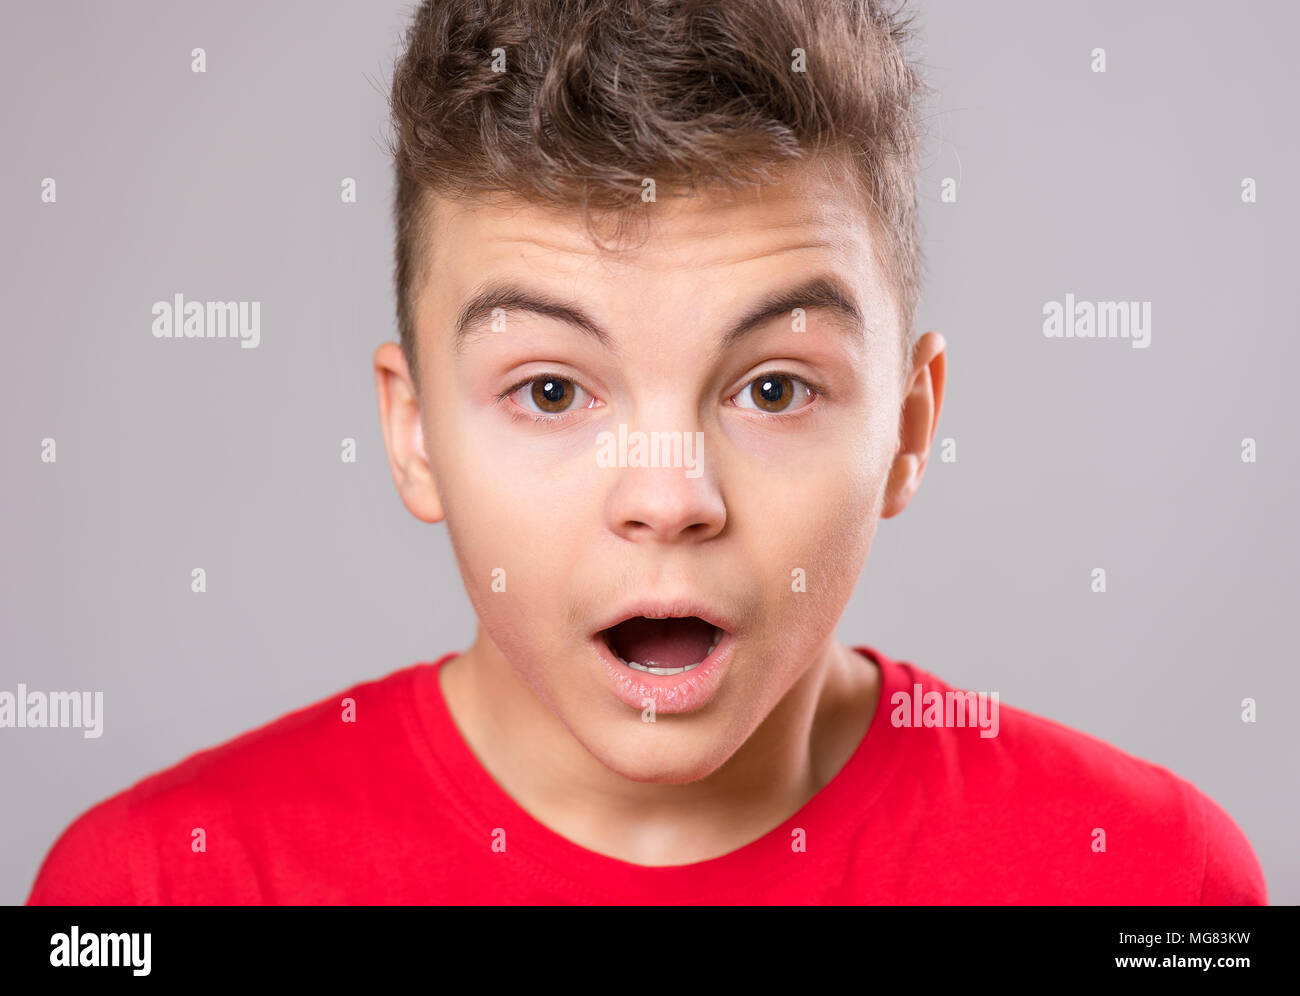 Portrait of caucasian émotionnelle teen boy - adolescent surpris looking at camera. Bel enfant, sur fond gris. Banque D'Images